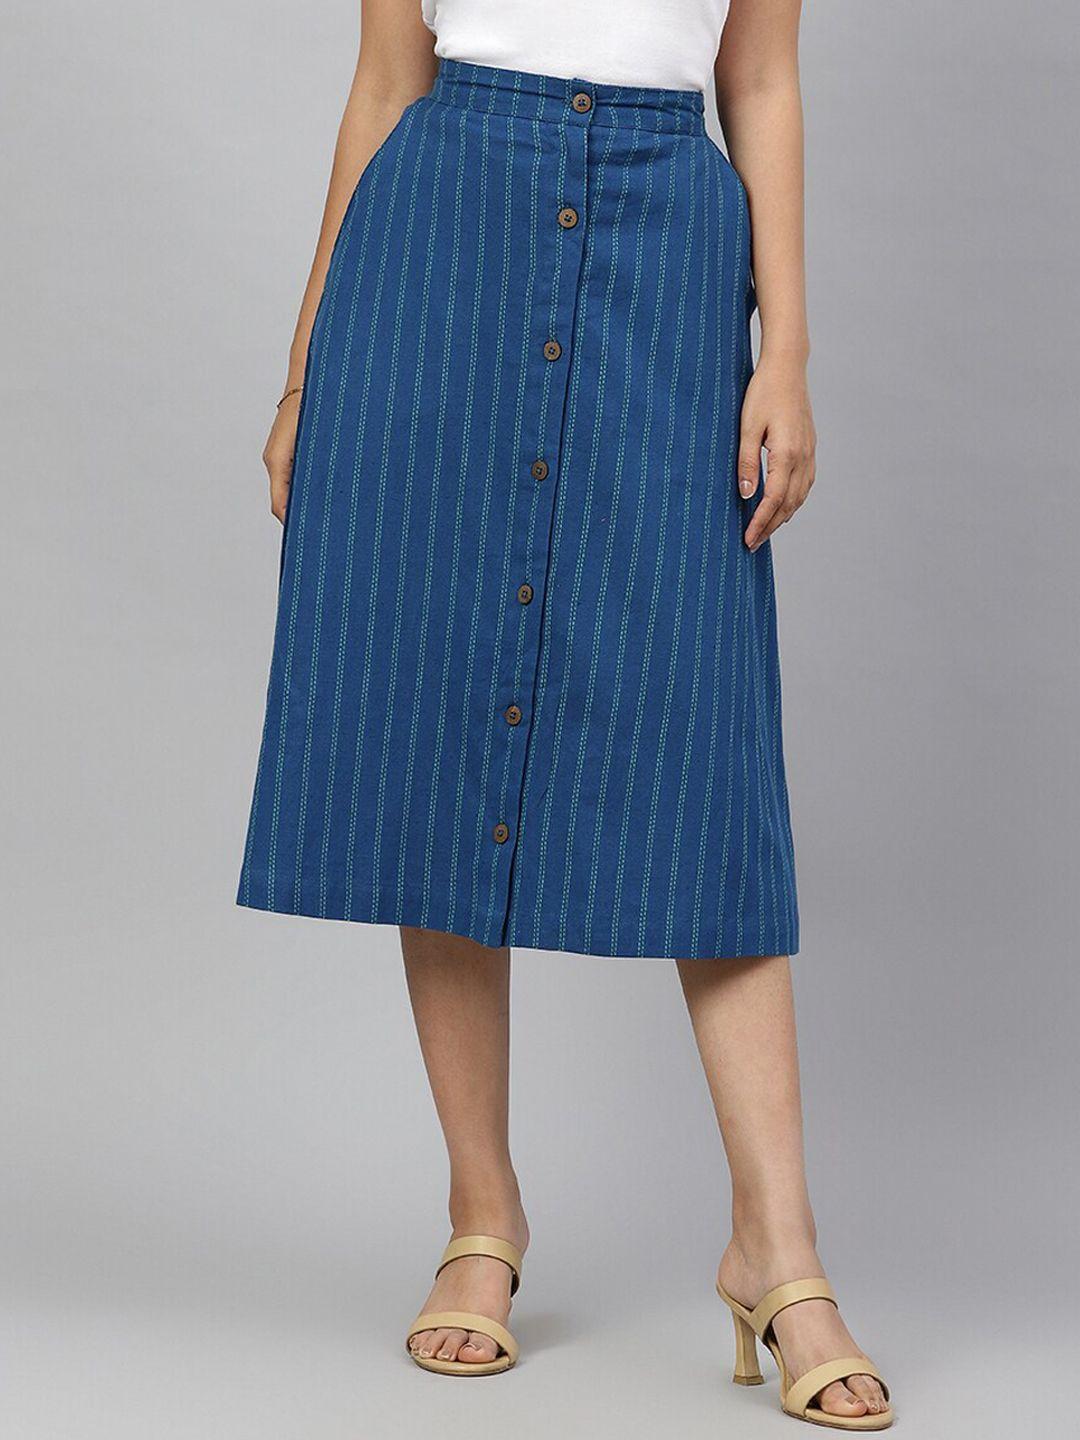 fabindia striped knee length a-line cotton linen skirt